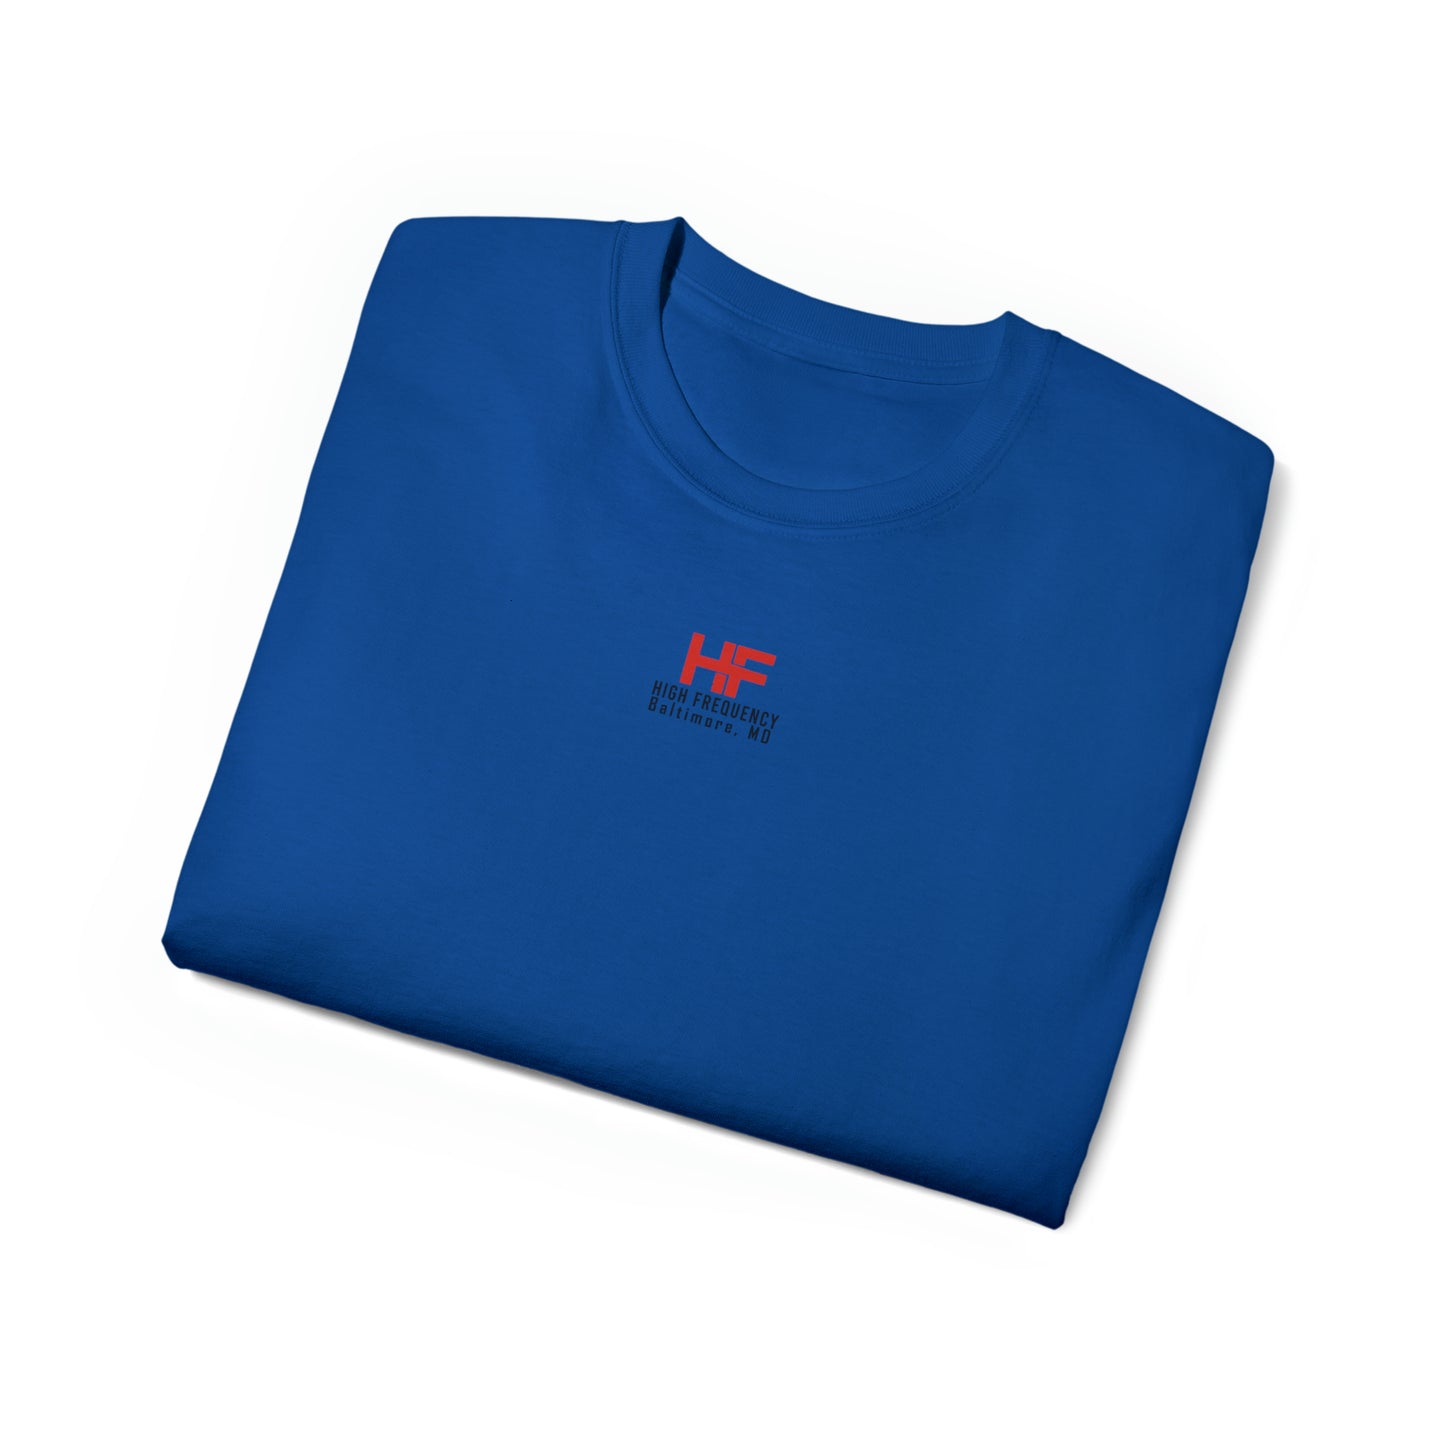 "F.I.G.H.T" Premium T-Shirt